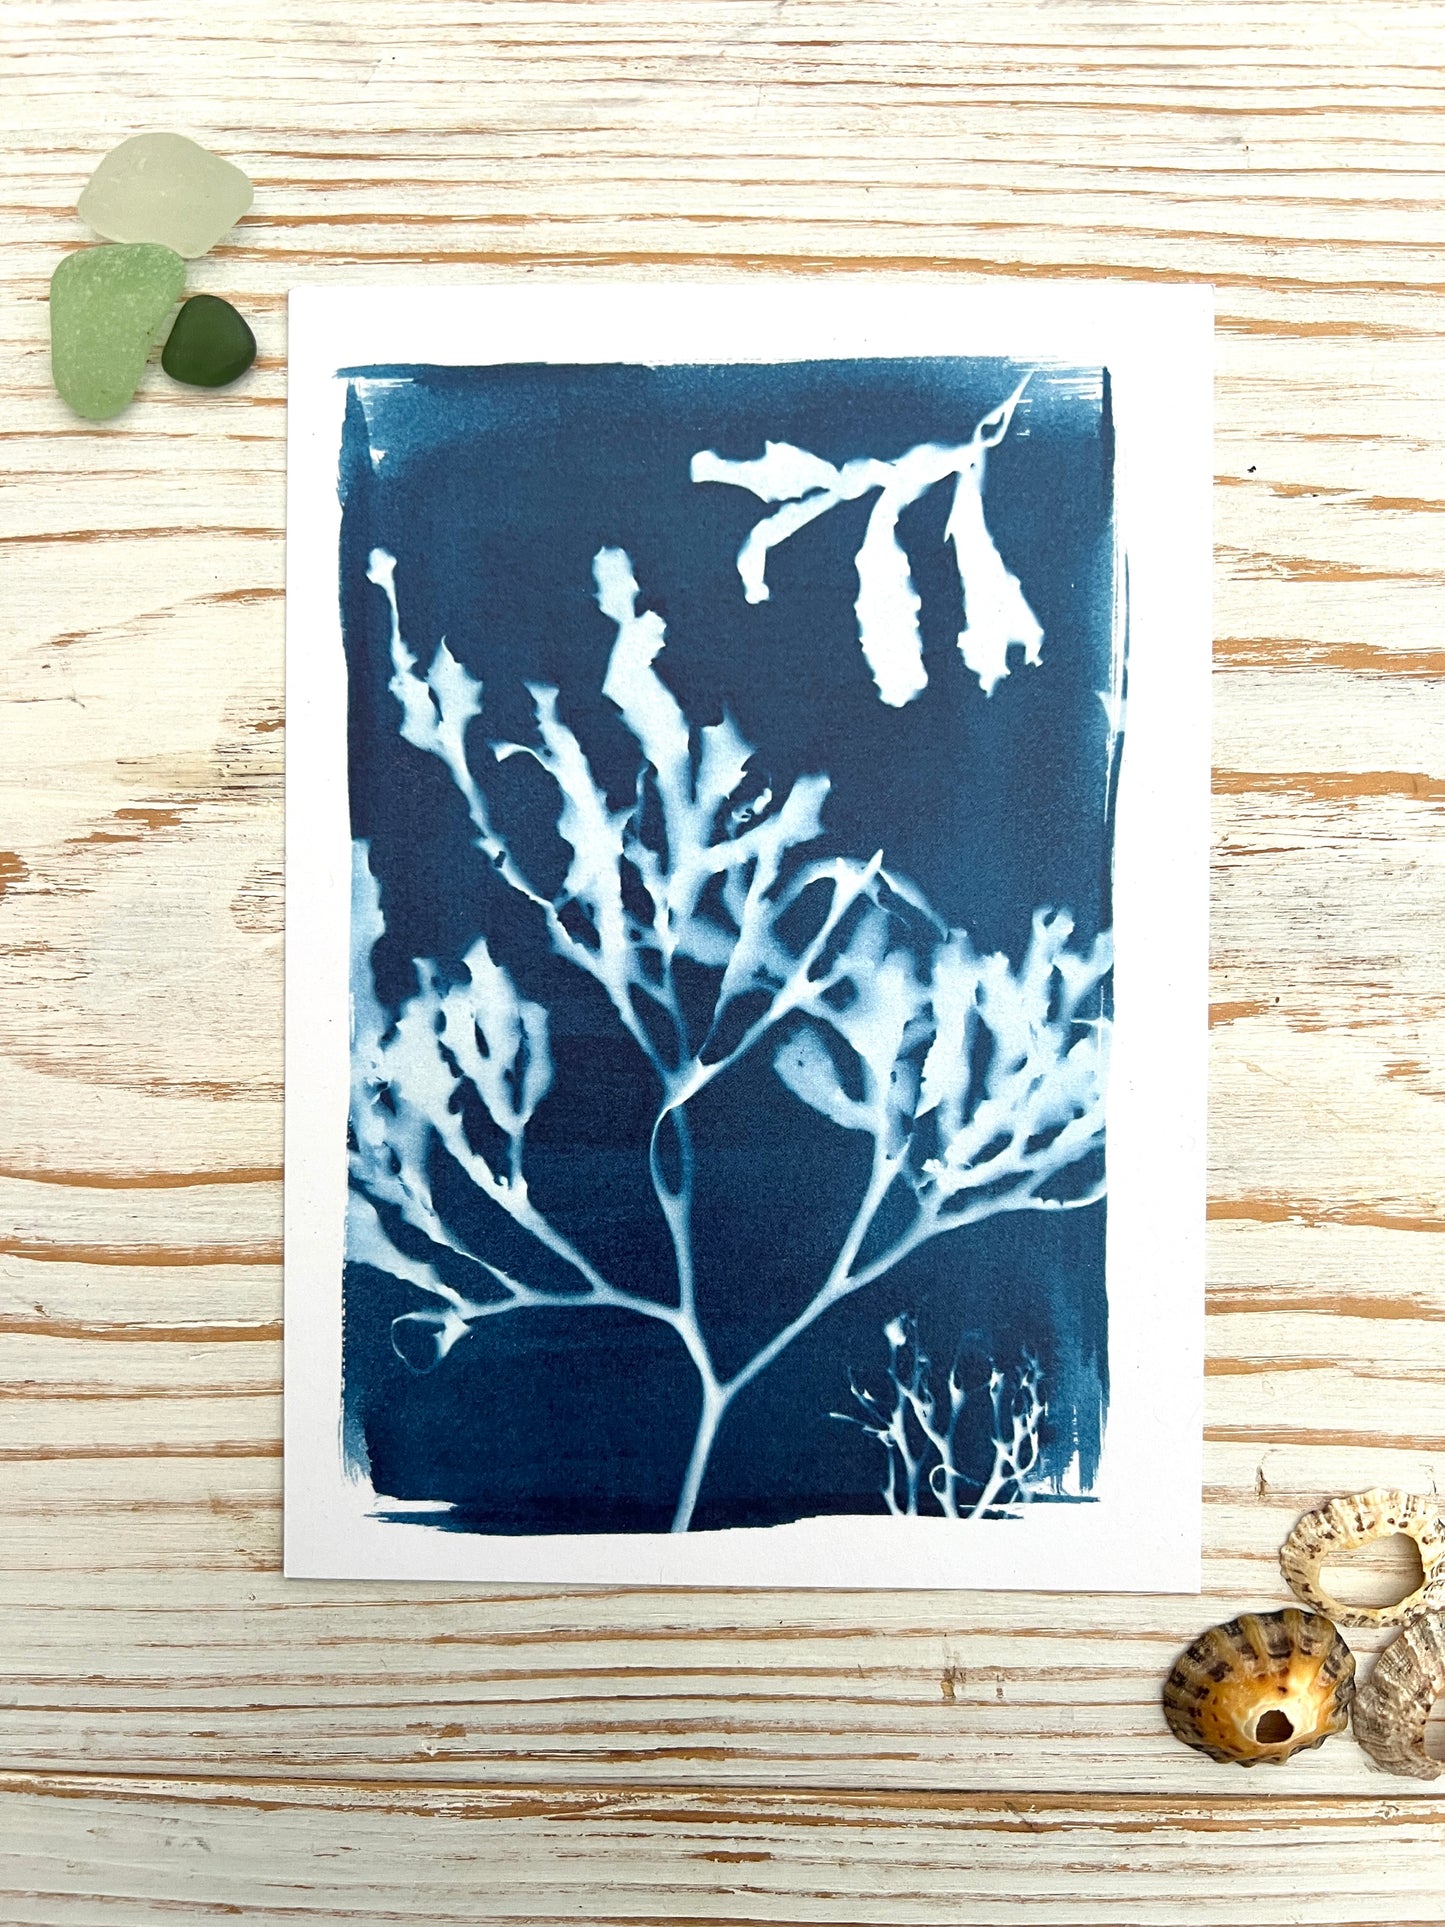 Blue Seaweed Cyanotype Postcard Gift Set